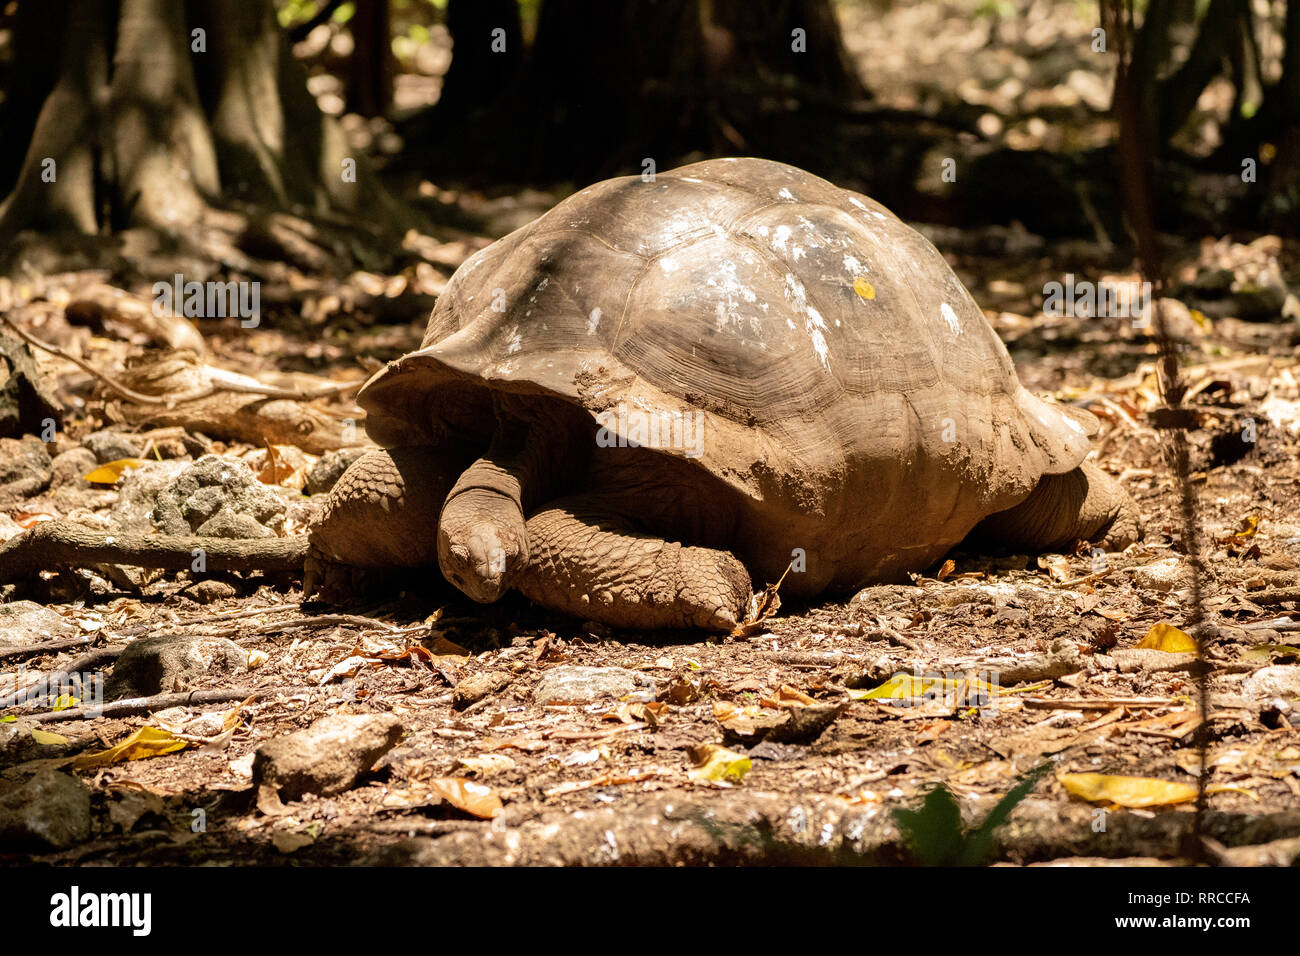 La tortuga gigante de Aldabra (Aldabrachelys gigantea), desde las islas del atolón de Aldabra en las Seychelles, es una de las tortugas más grandes en el w Foto de stock